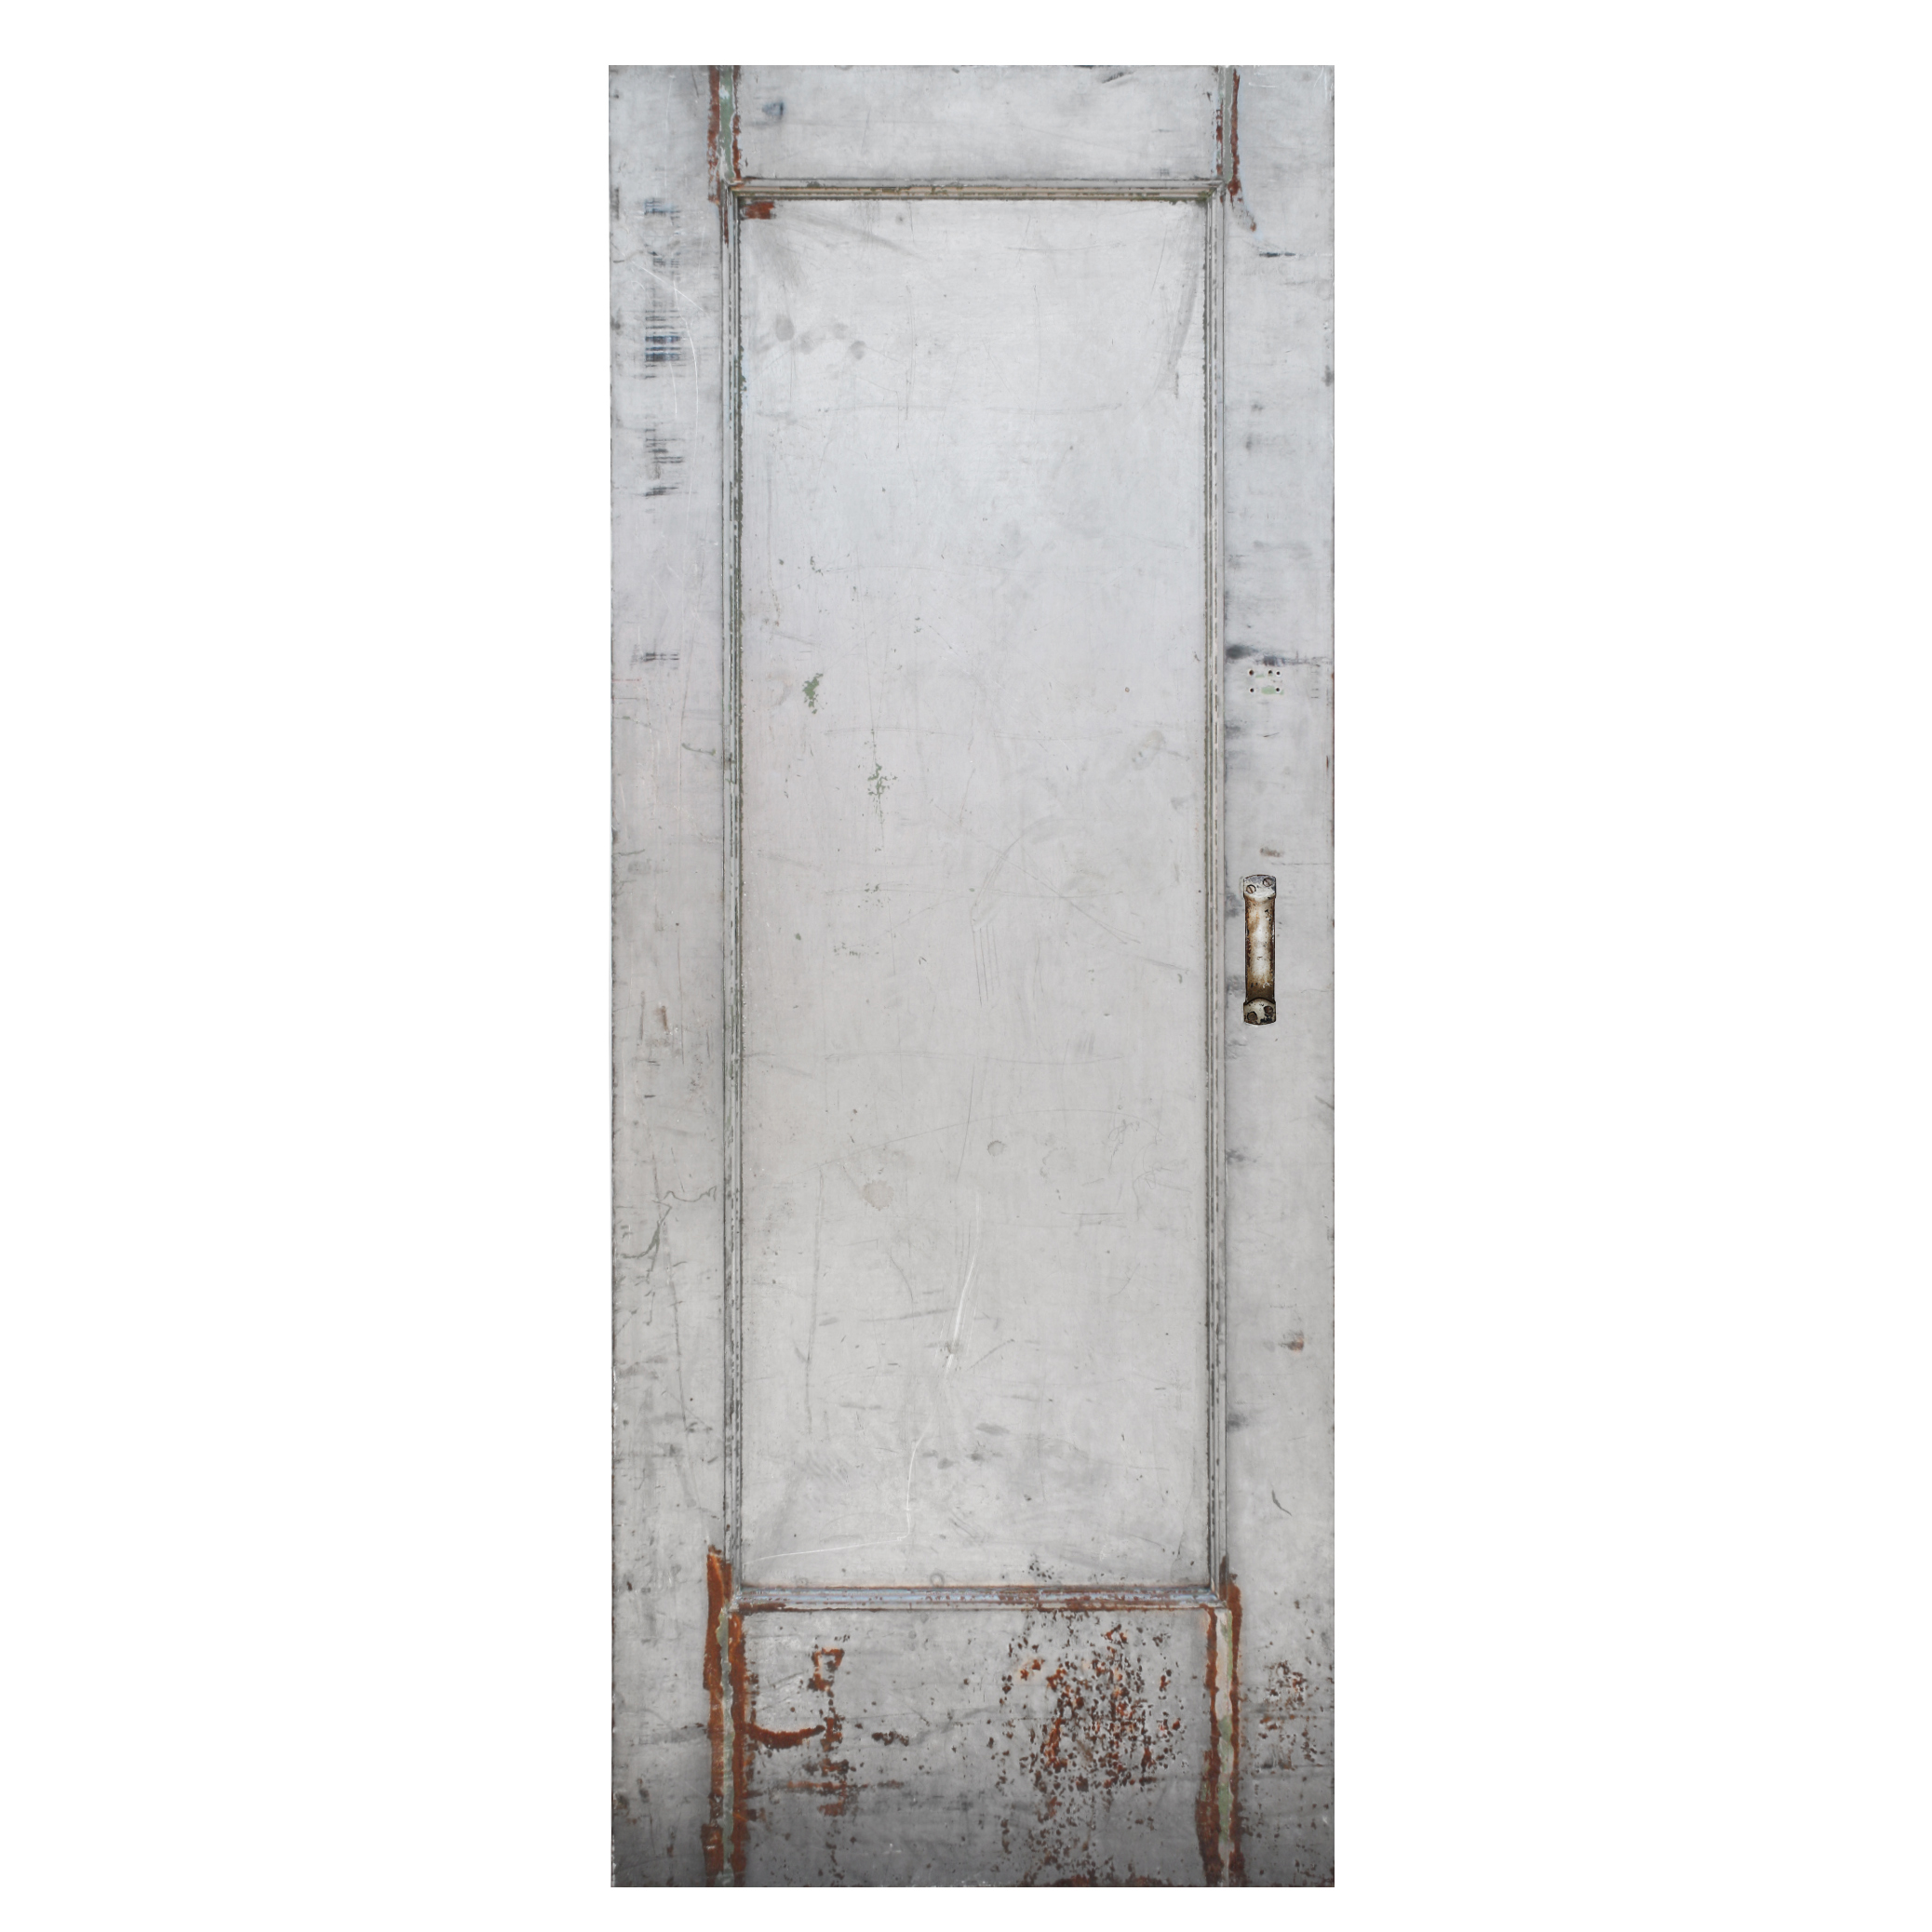 SOLD Reclaimed Antique 32" Industrial Fire Door -0